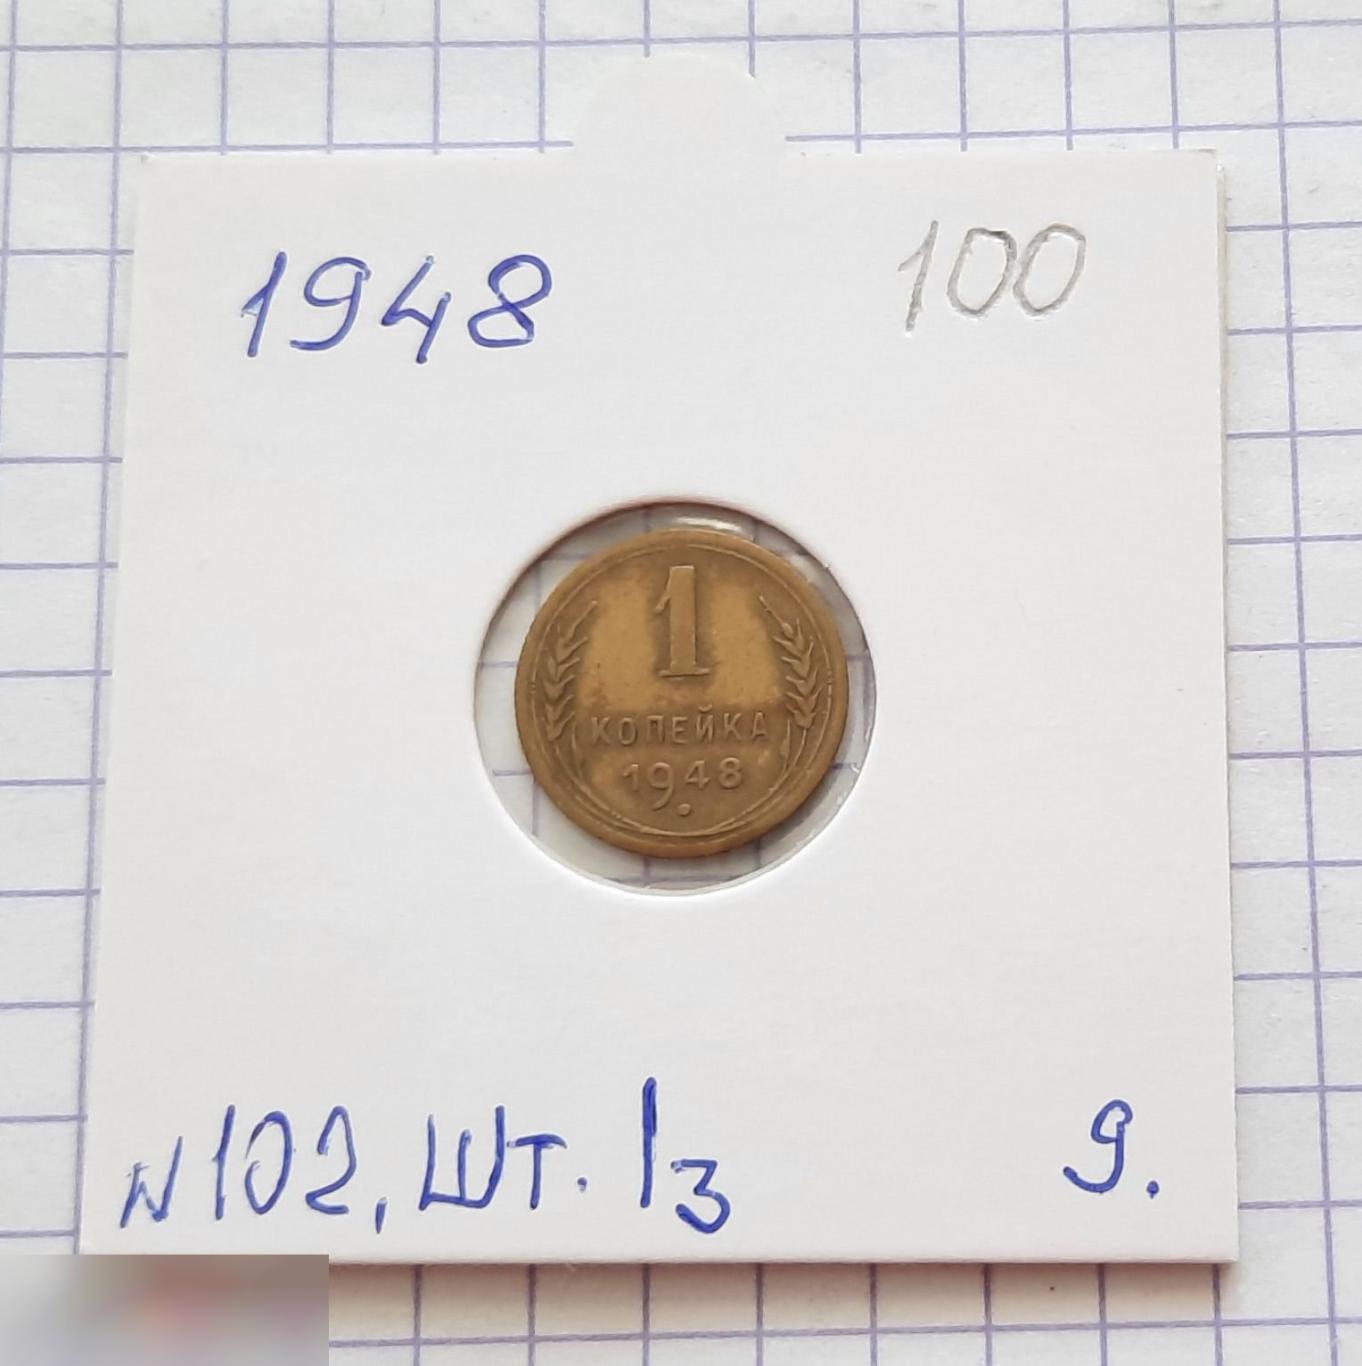 Монета, 1 Копейка, 1948 год, ШТ 1.3, № 102, СОСТОЯНИЕ, СОХРАН, Клуб, Лот № 9